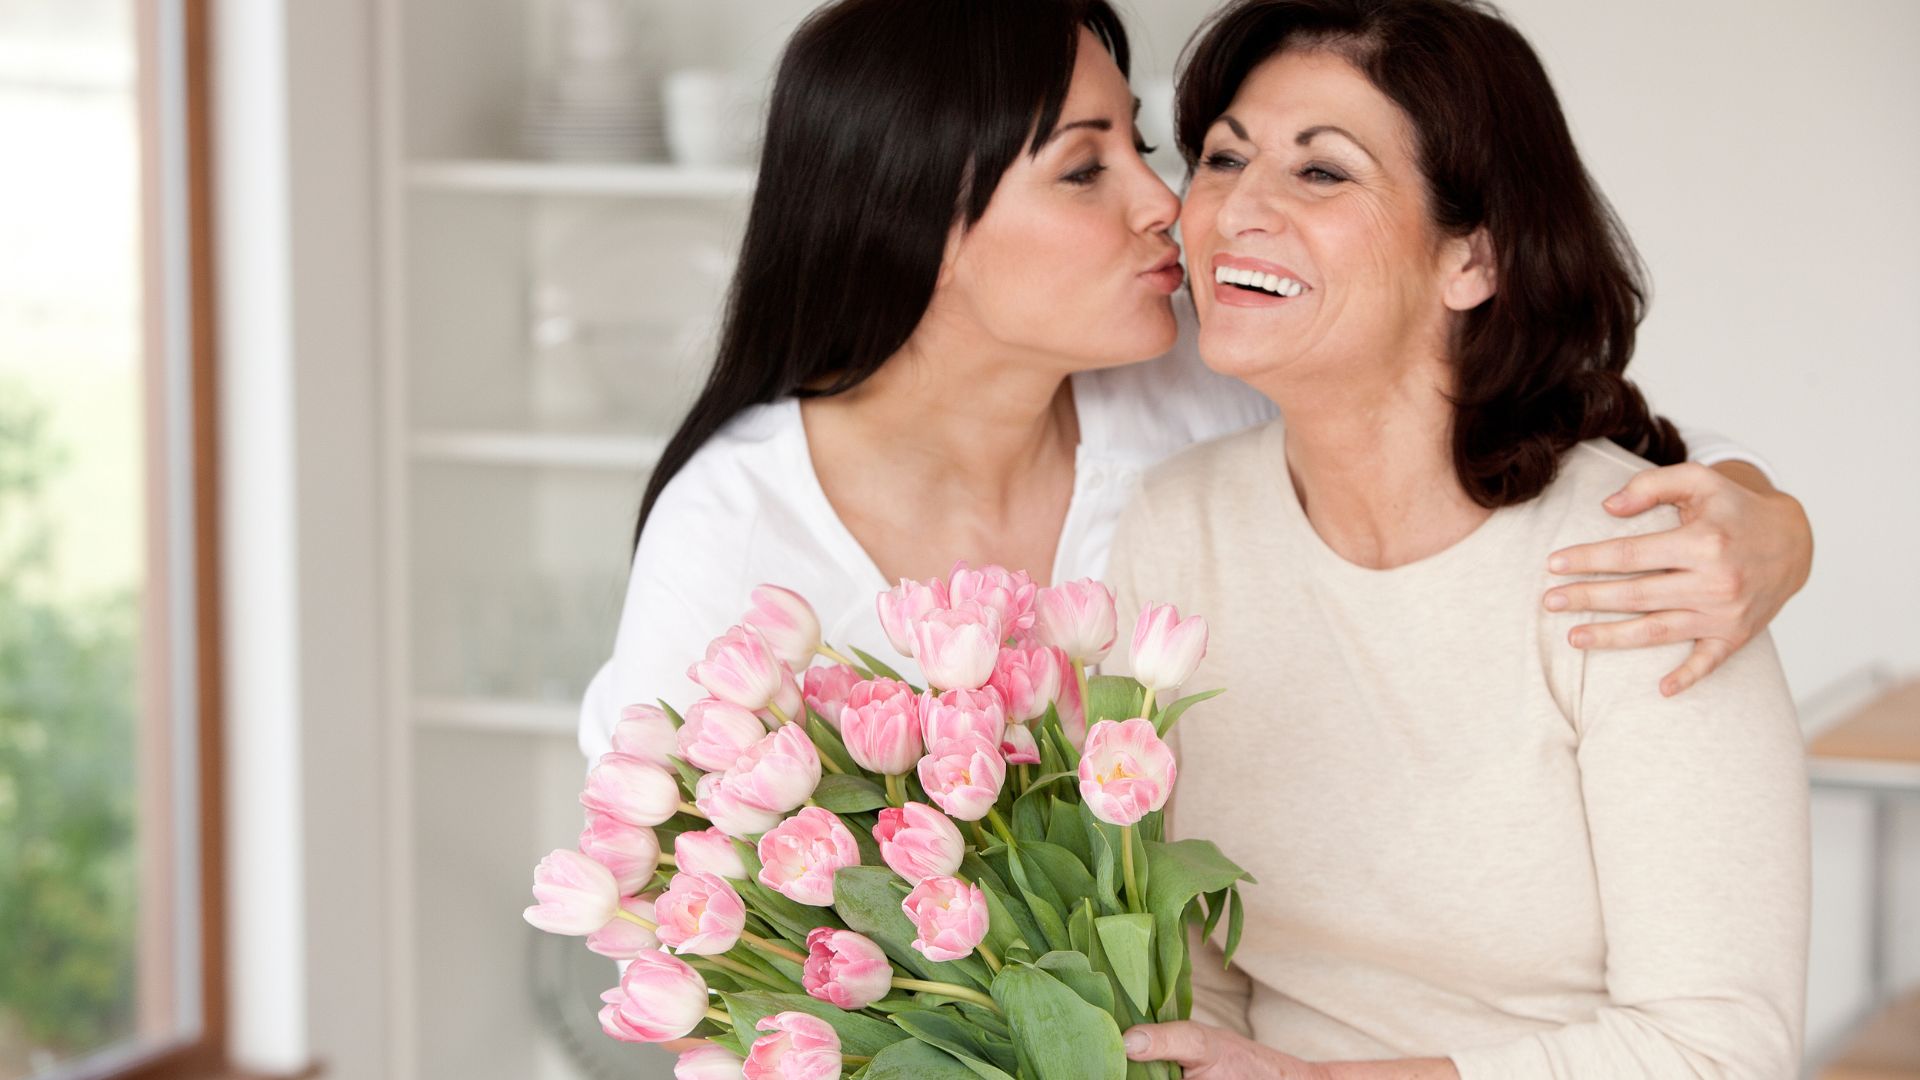 Imagem de uma filha abraçando a sua mãe e entregando um ramalhete de flores na cor rosa. Ambas usam blusa de frio nas cores bege e branco.